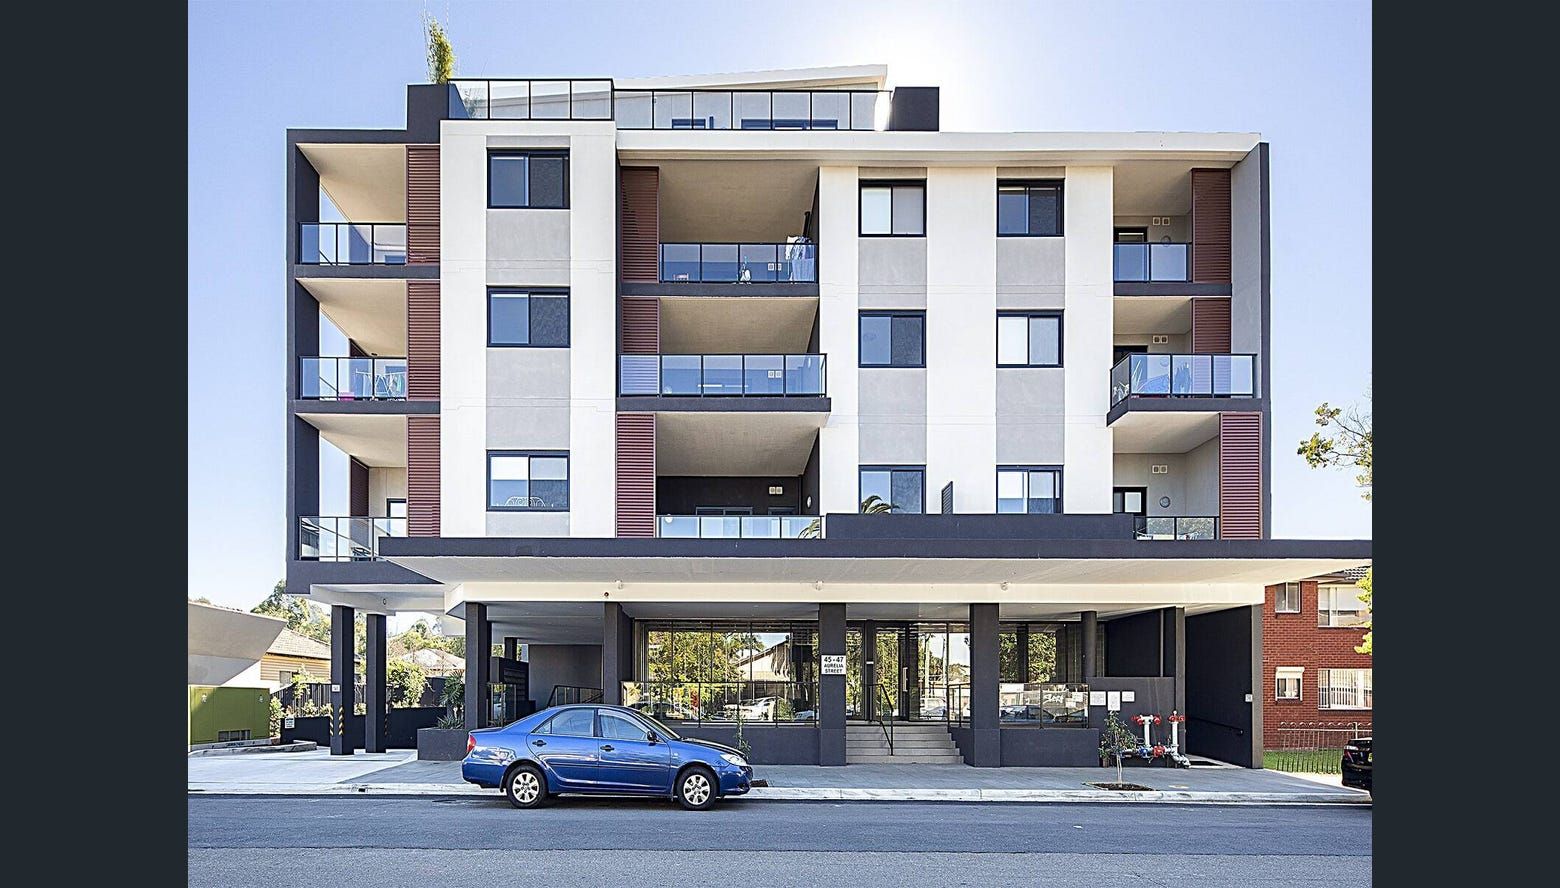 1 bedrooms Apartment / Unit / Flat in 11/45-47 Aurelia Street TOONGABBIE NSW, 2146